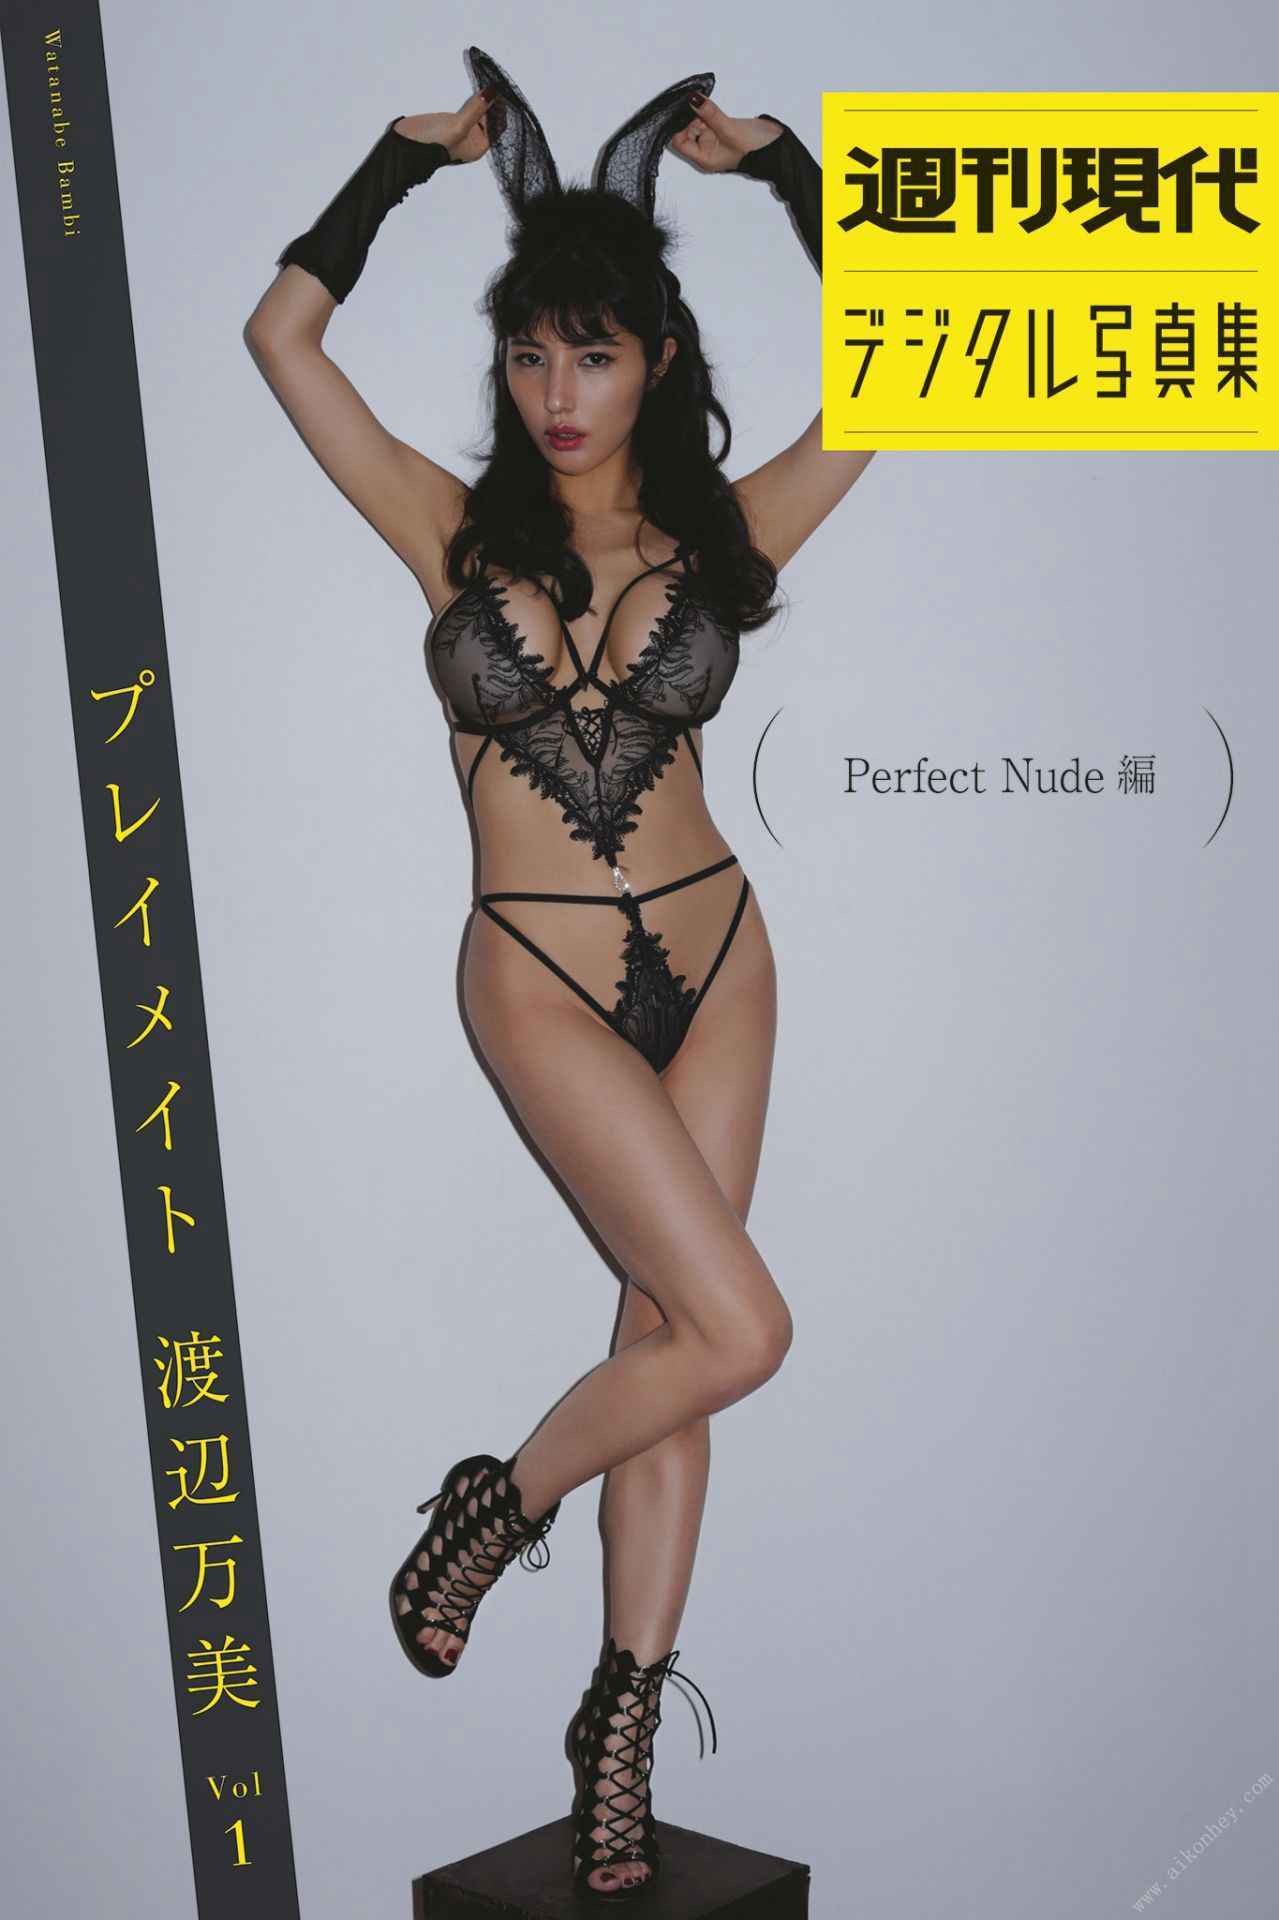 渡辺万美 - Playmate vol.1 Perfect Nude Edition プレイメイトvol.1perfect nude